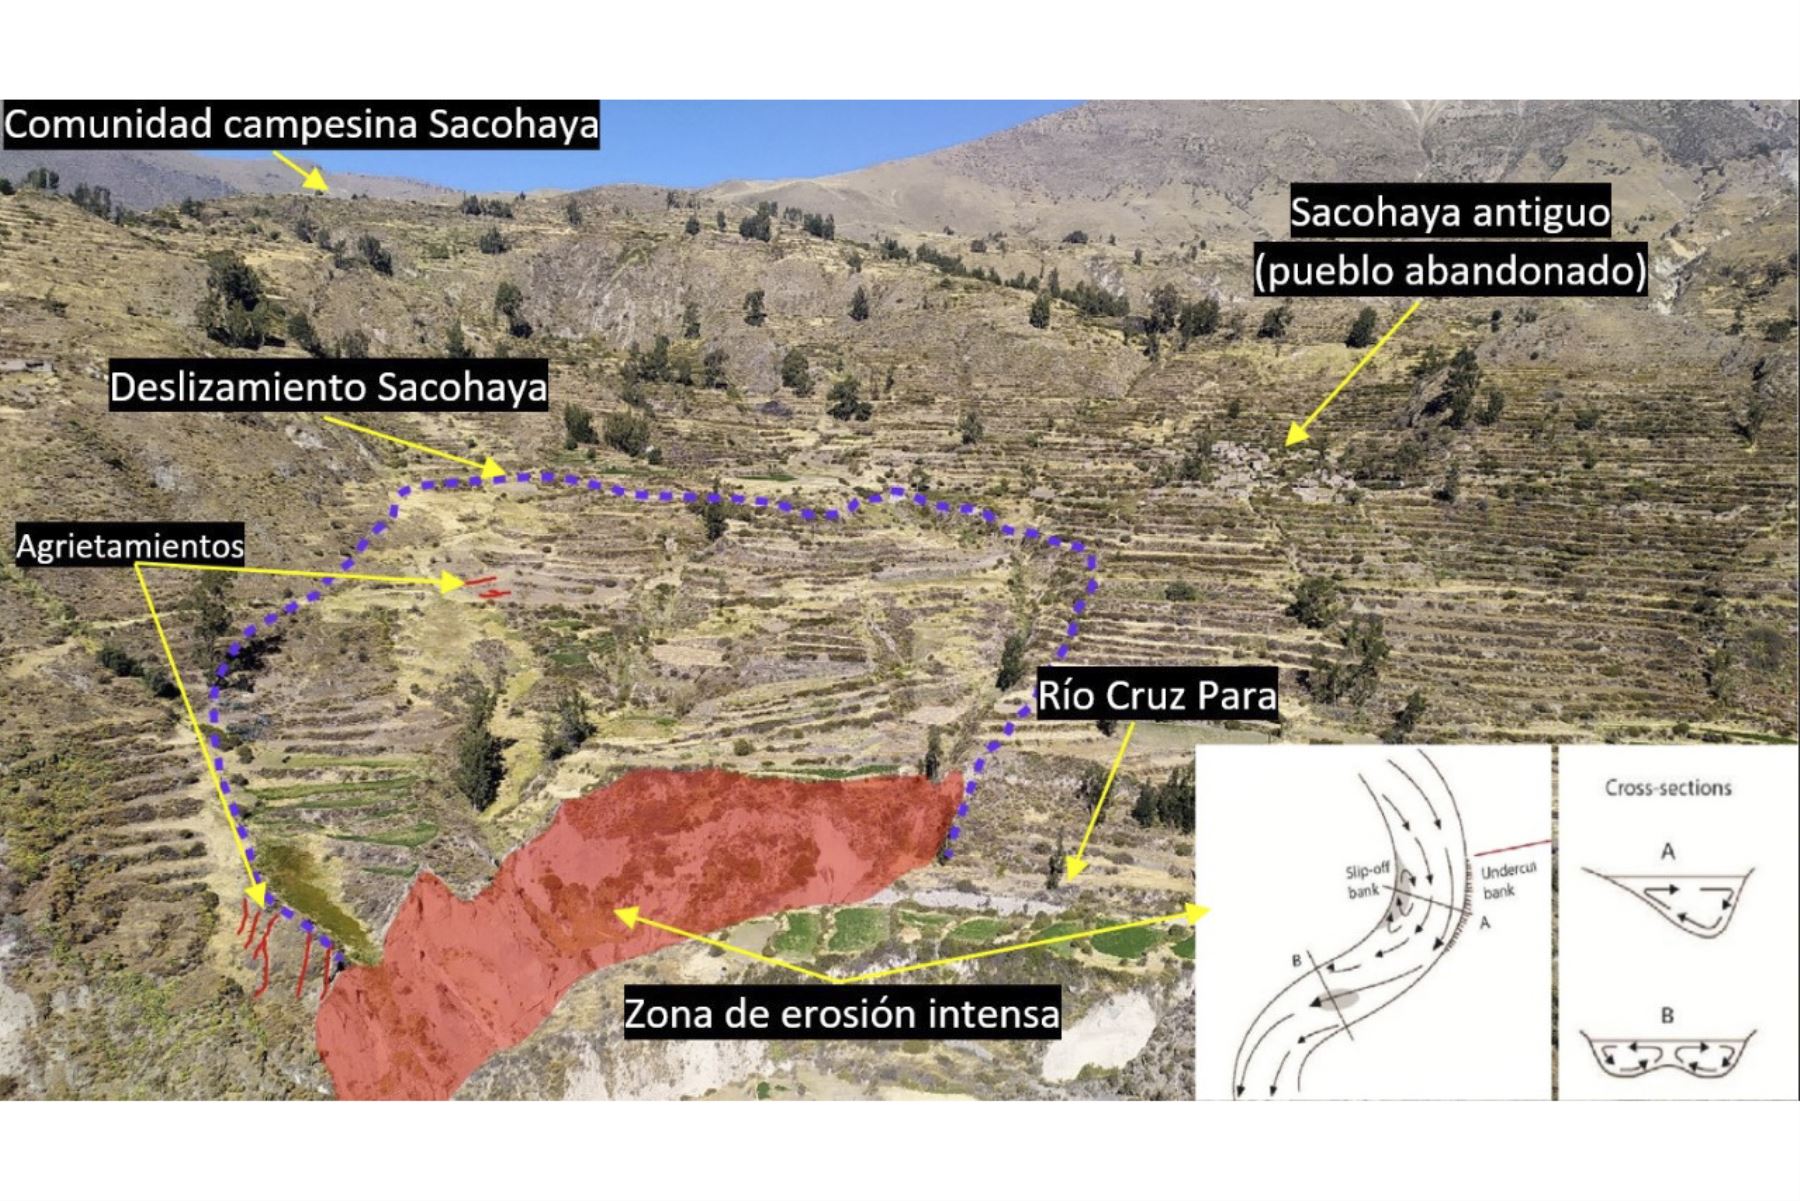 El Ingemmet hizo evaluación de peligros geológicos en la comunidad campesina de Sacohaya, provincia General Sánchez Cerro, región Moquegua. Foto: ANDINA/Ingemmet